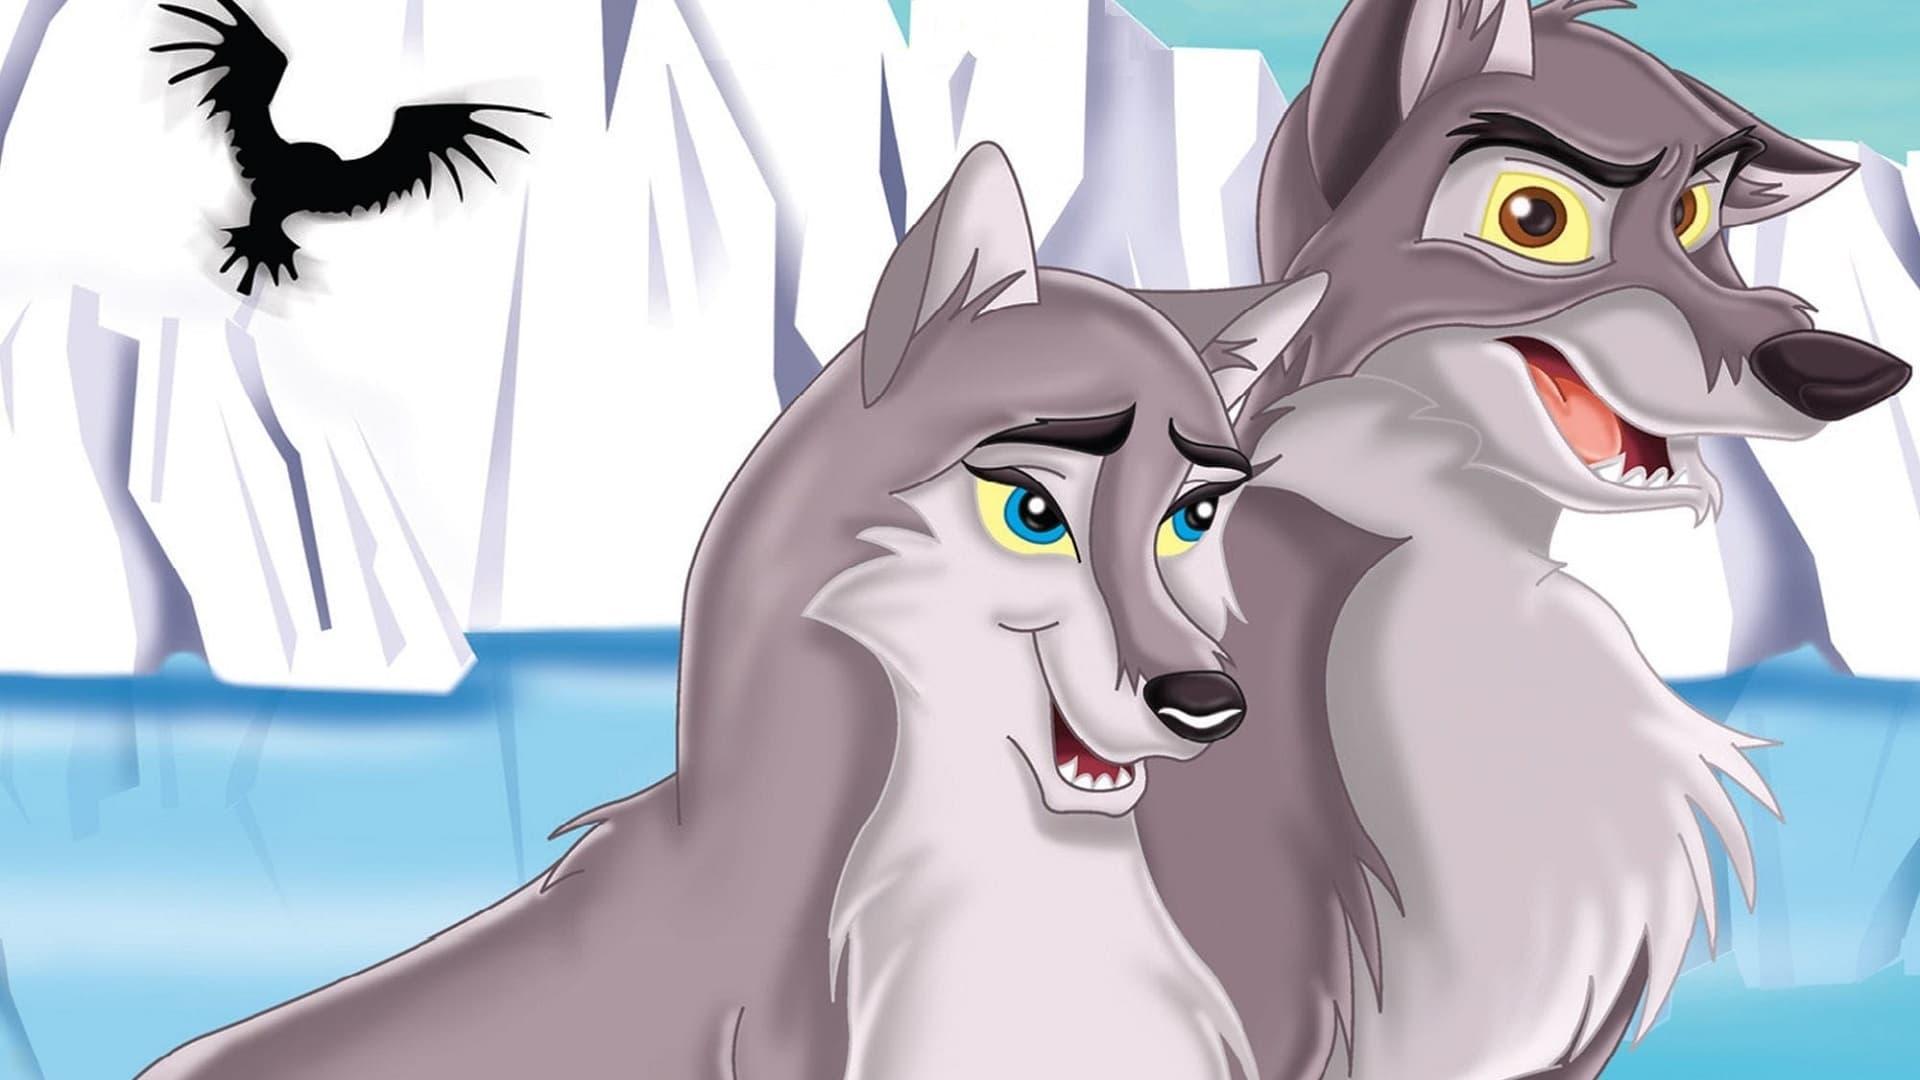 Balto II: Wolf Quest backdrop